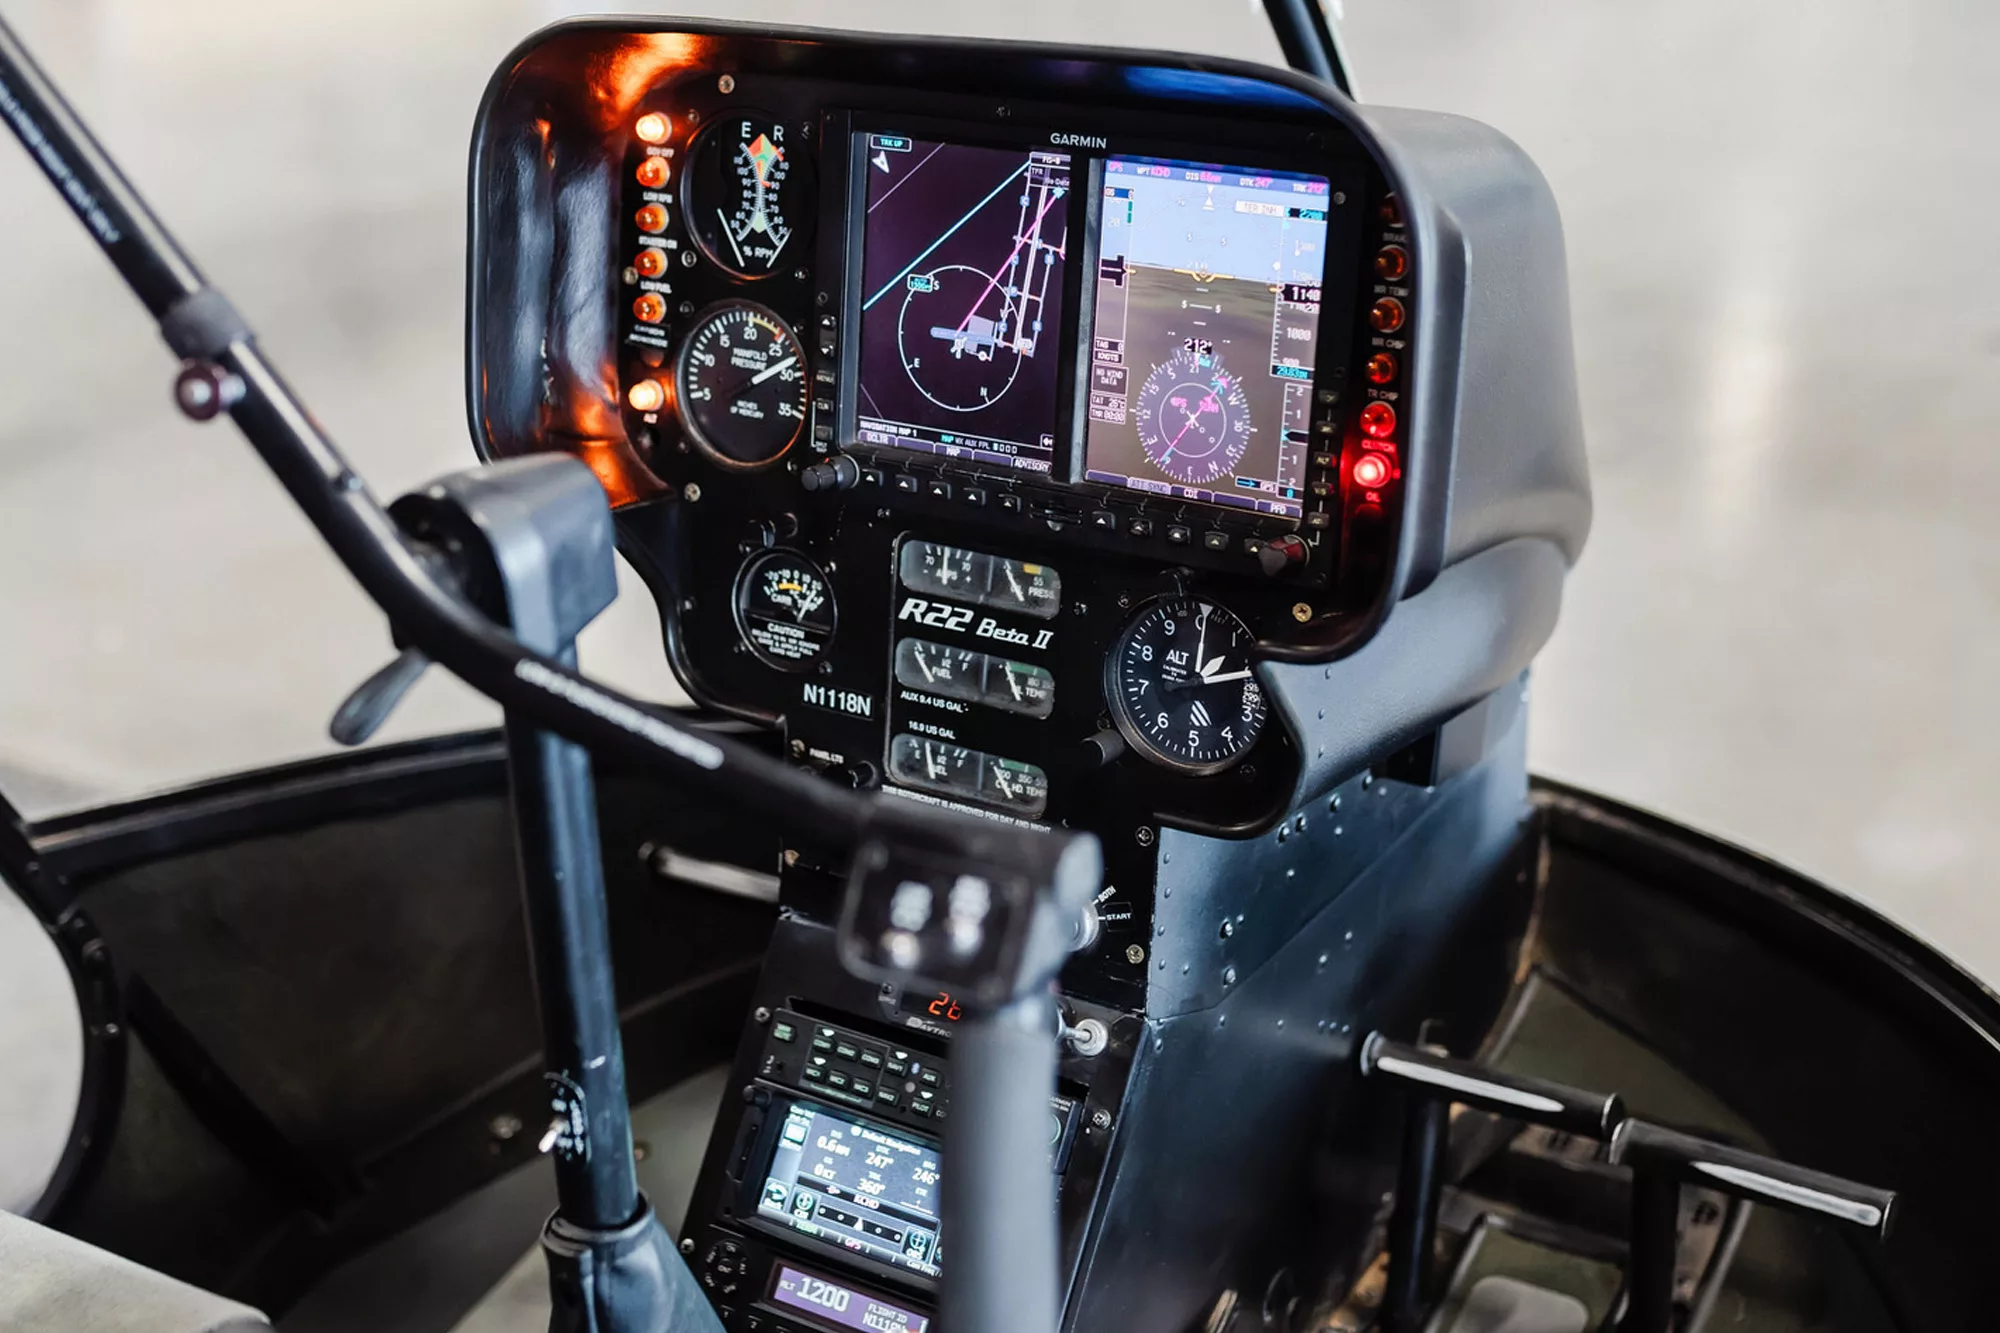 Helipter flight training school instrumentation